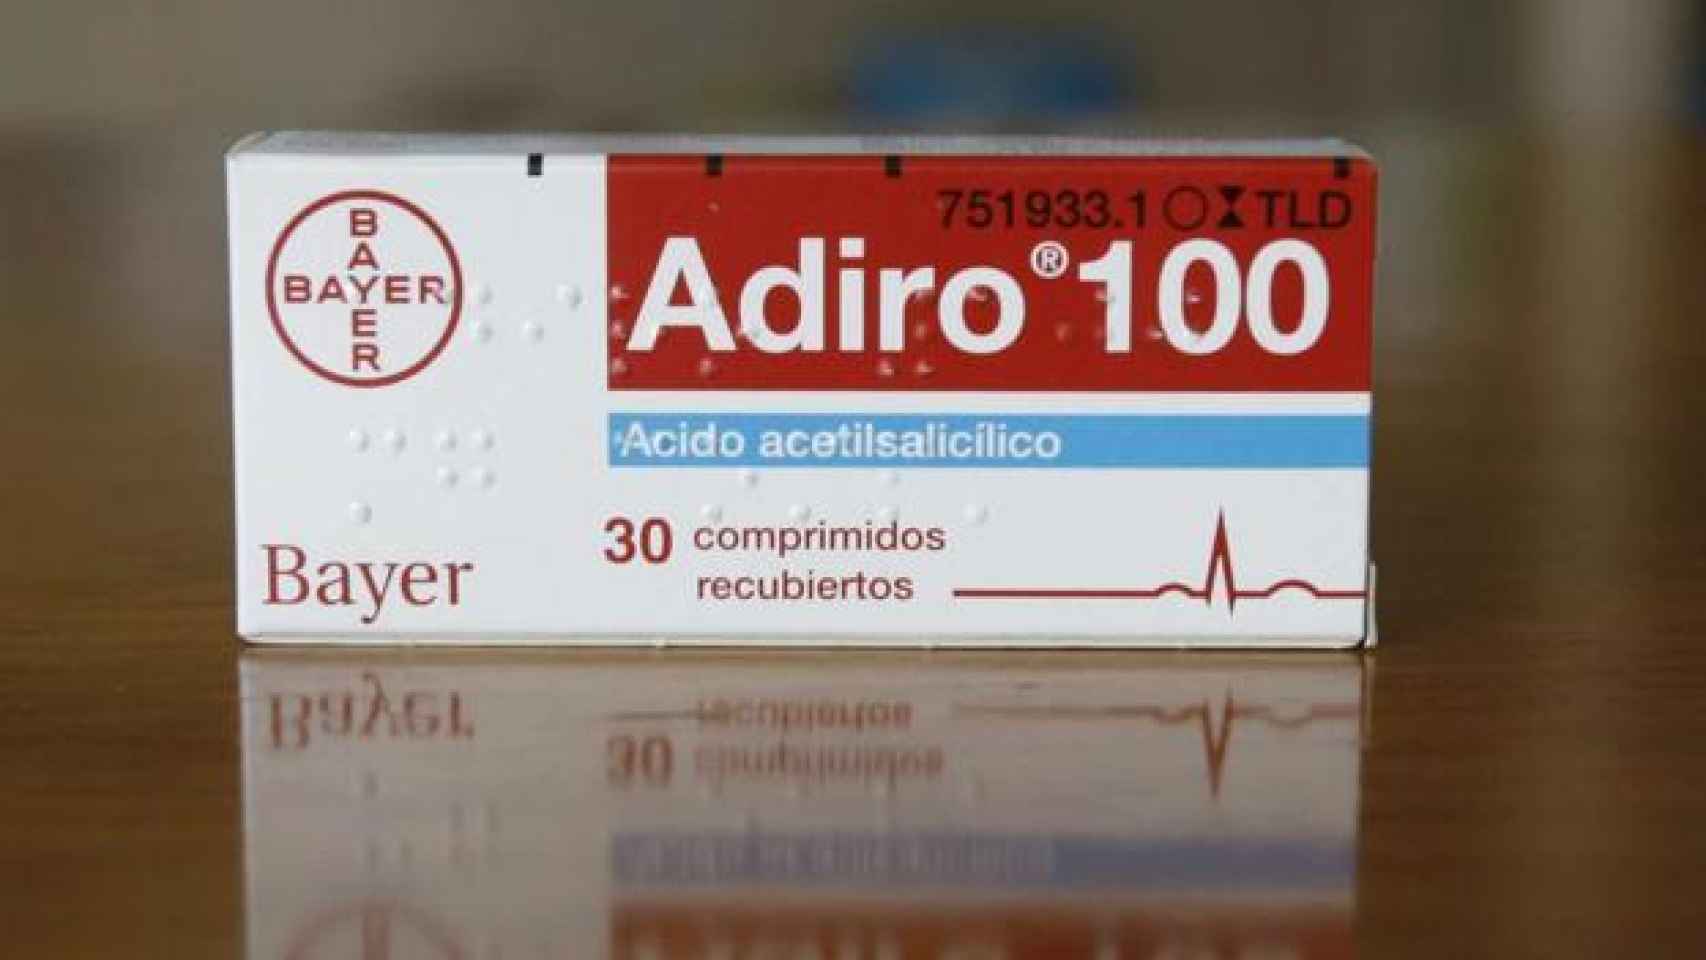 Adiro: son las alternativas Adiro: pánico injustificado las farmacias